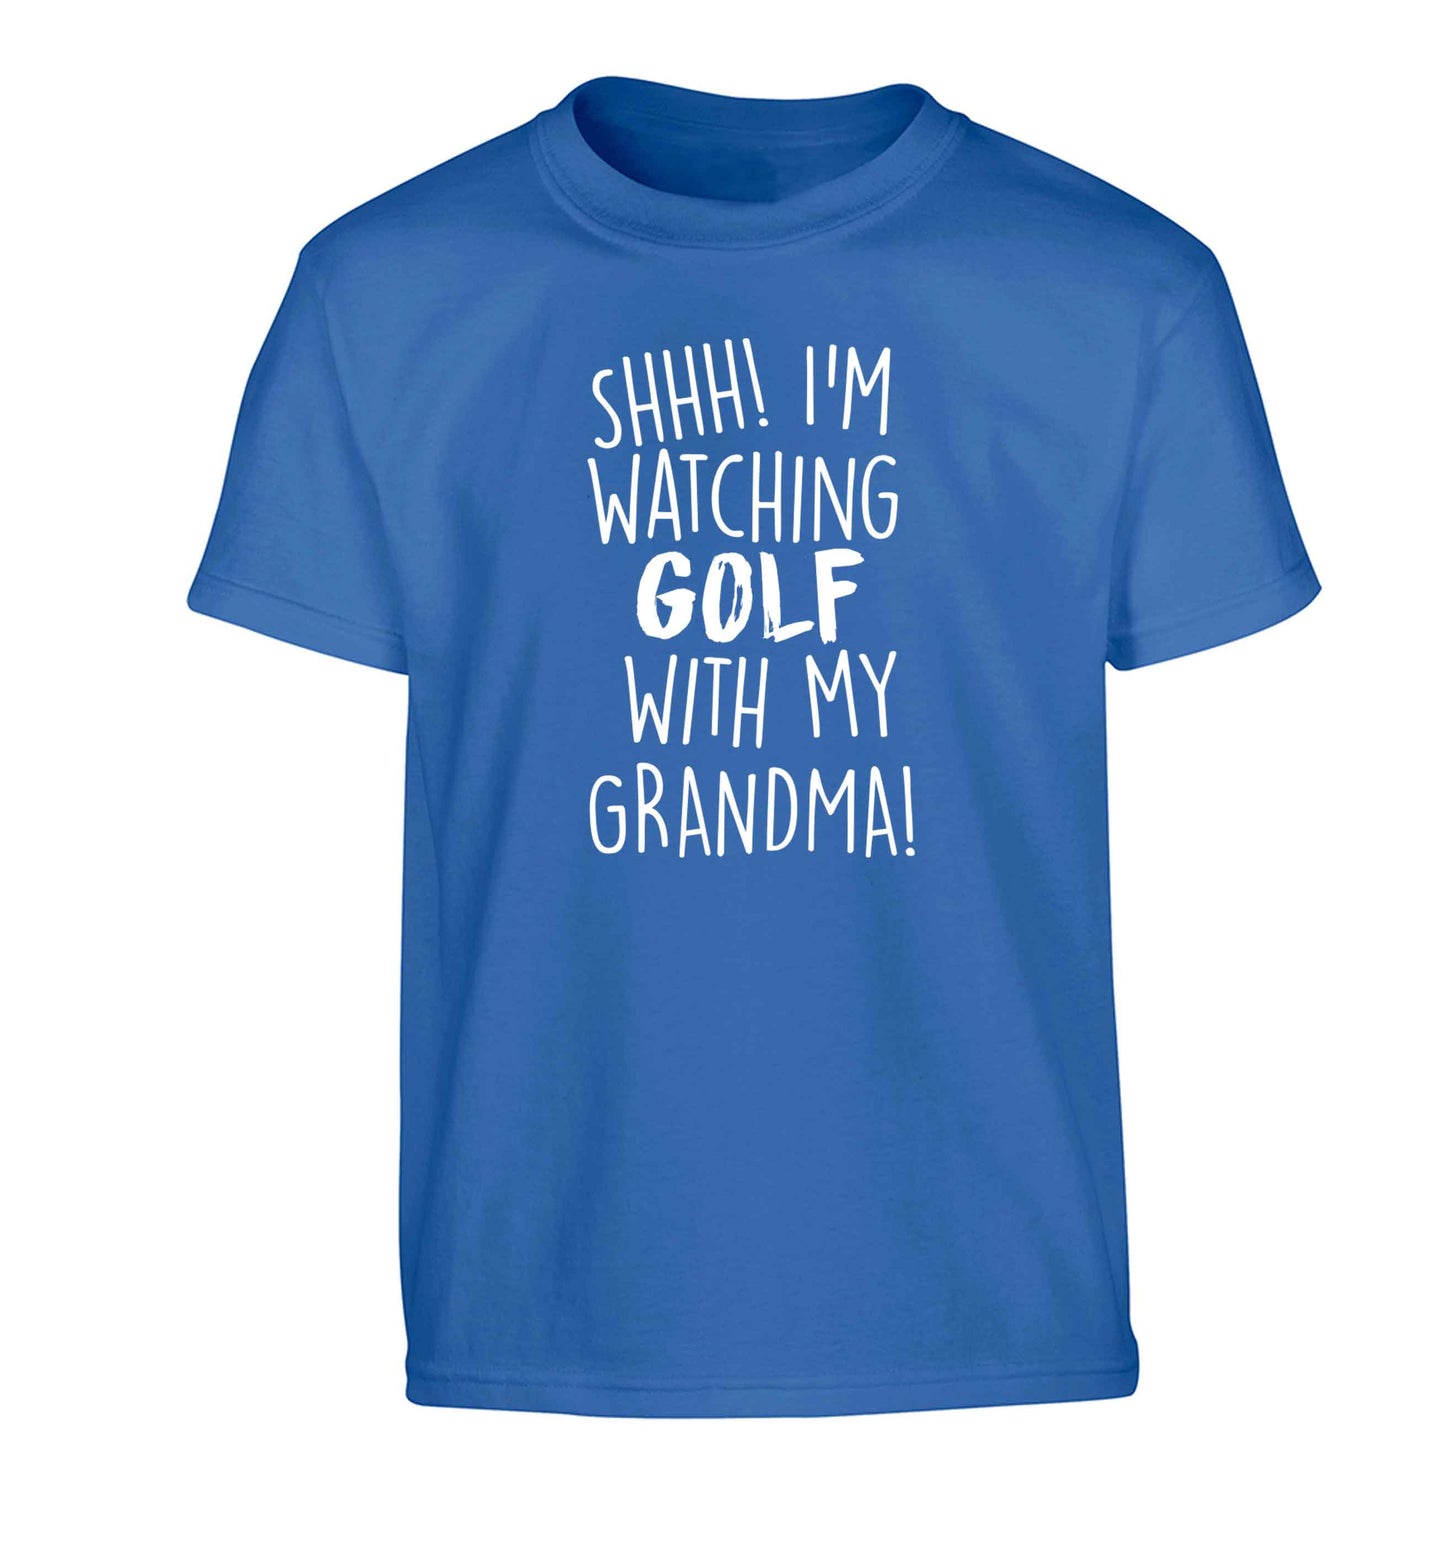 Shh I'm watching golf with my grandma Children's blue Tshirt 12-13 Years